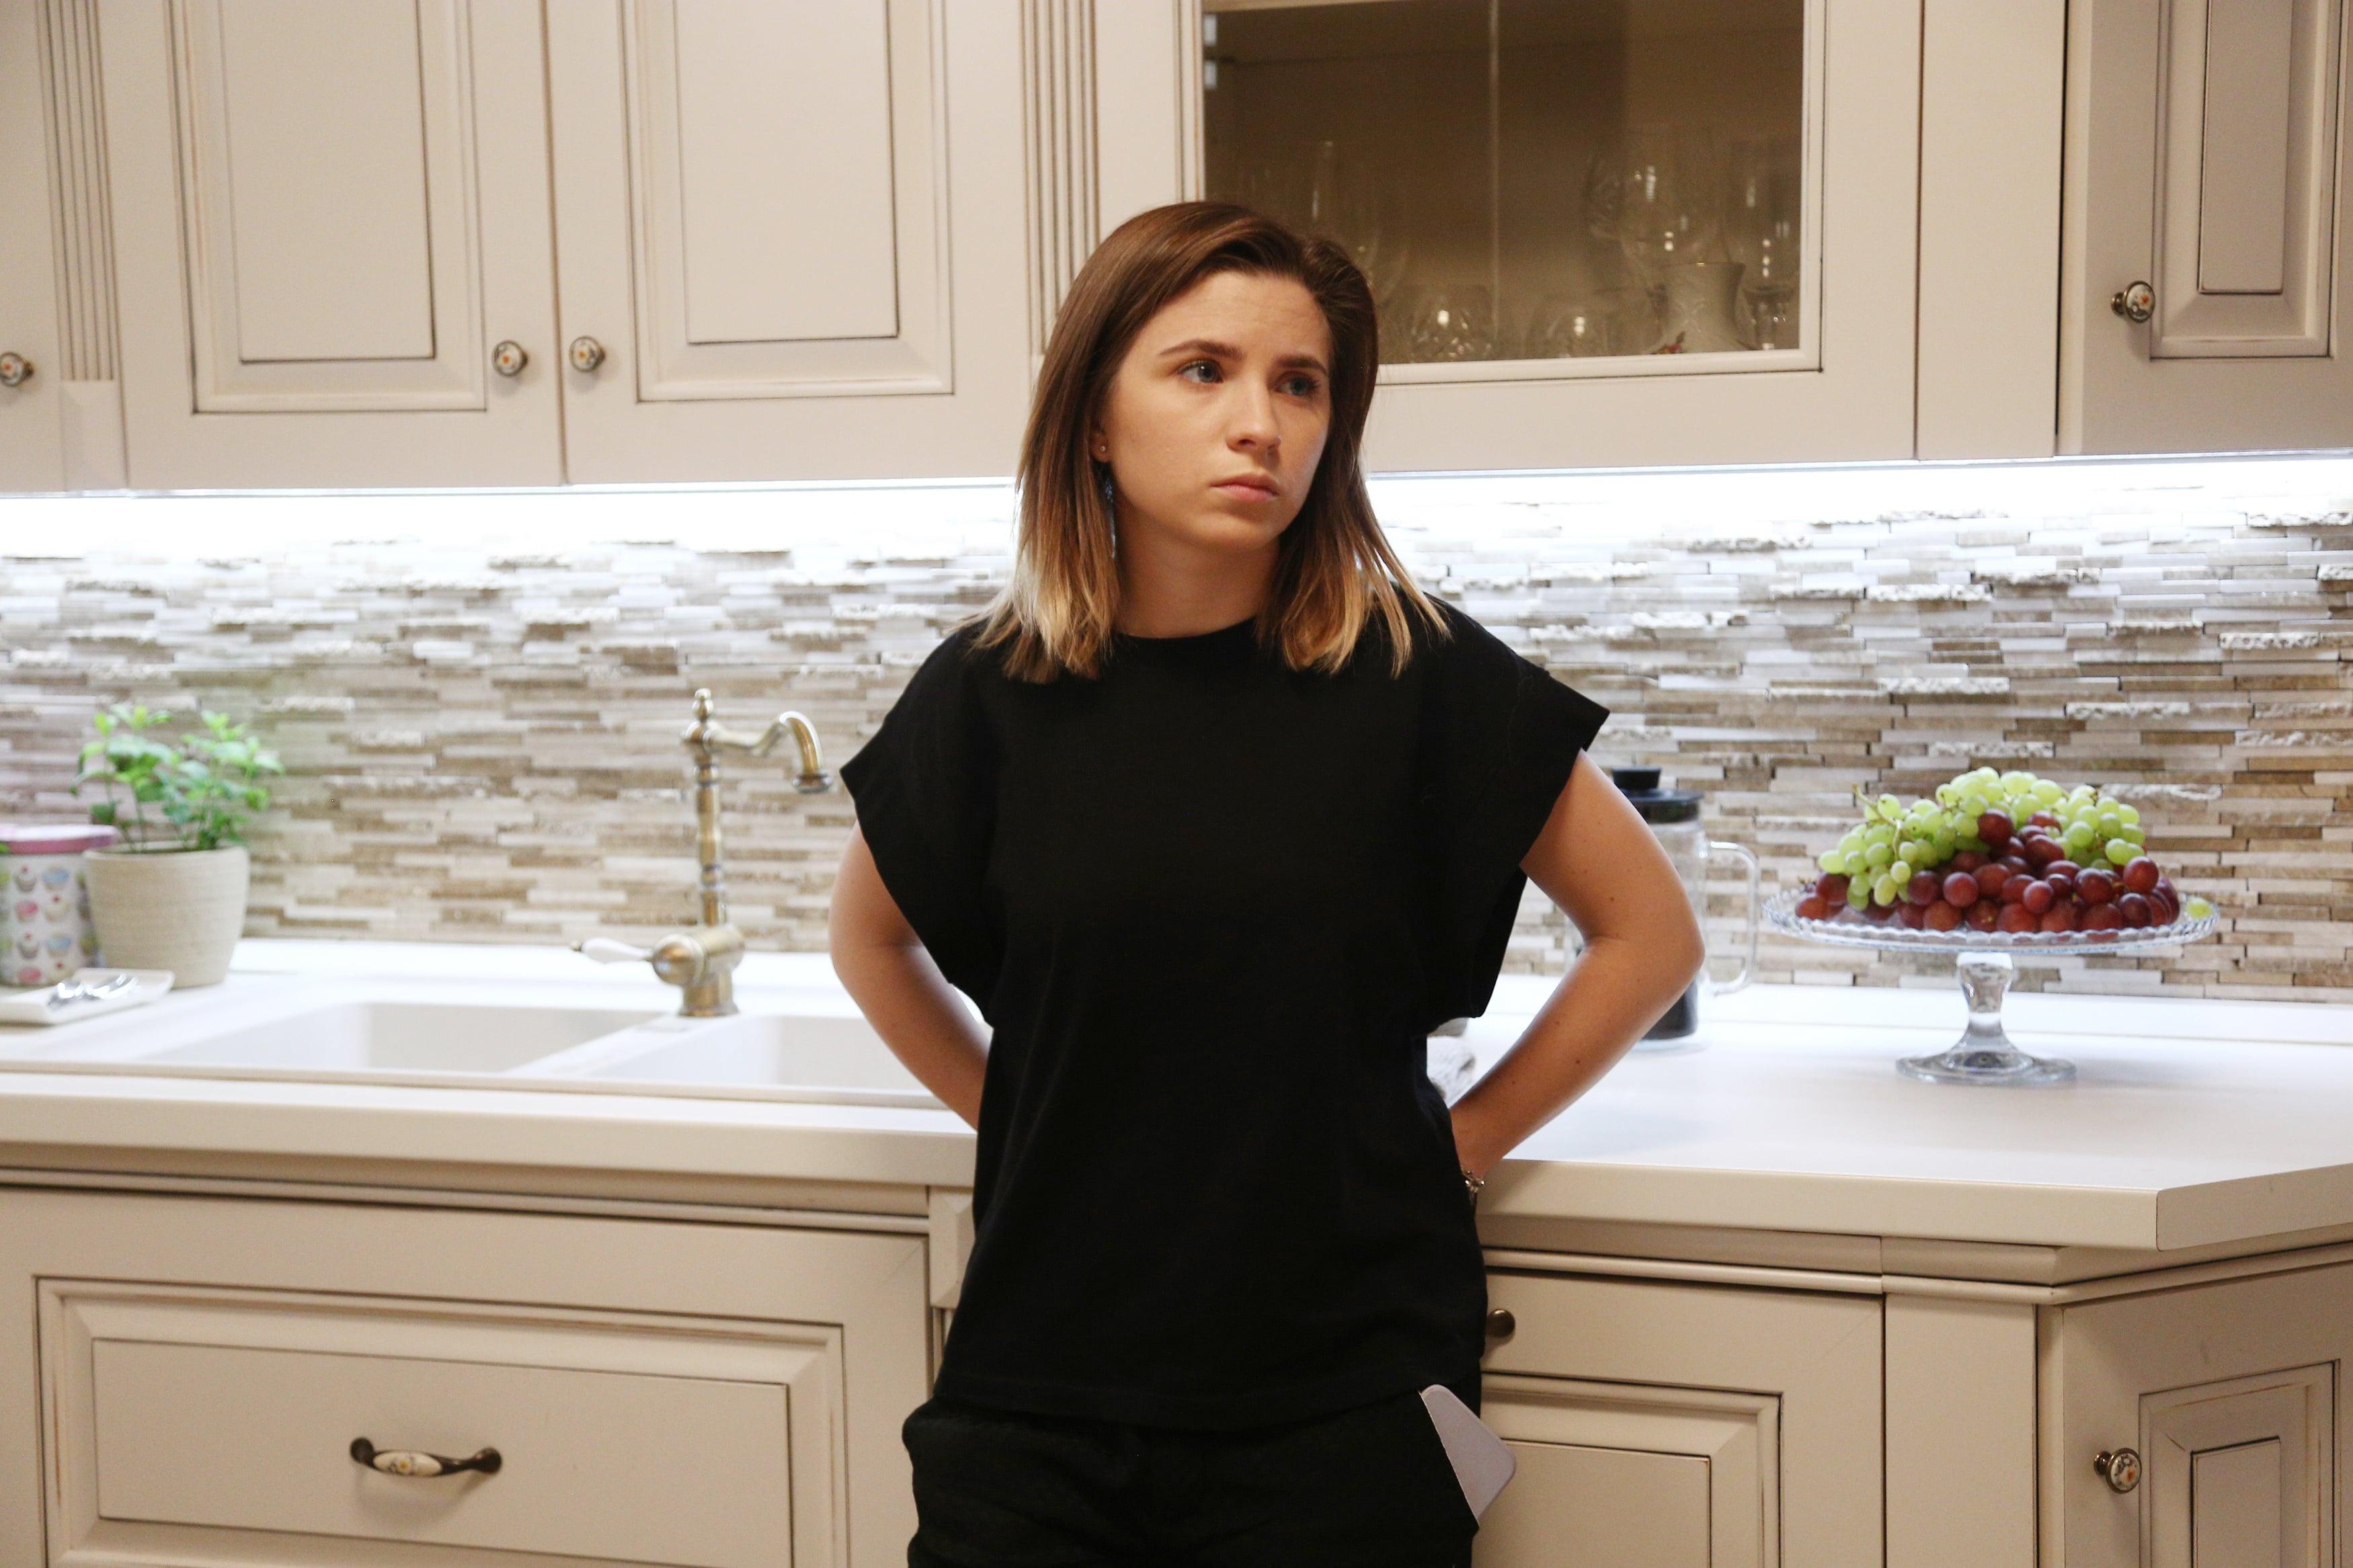 Livia, în casa Andronic, sprijinită de blatul din bucătărie și îmbrăcată în negru